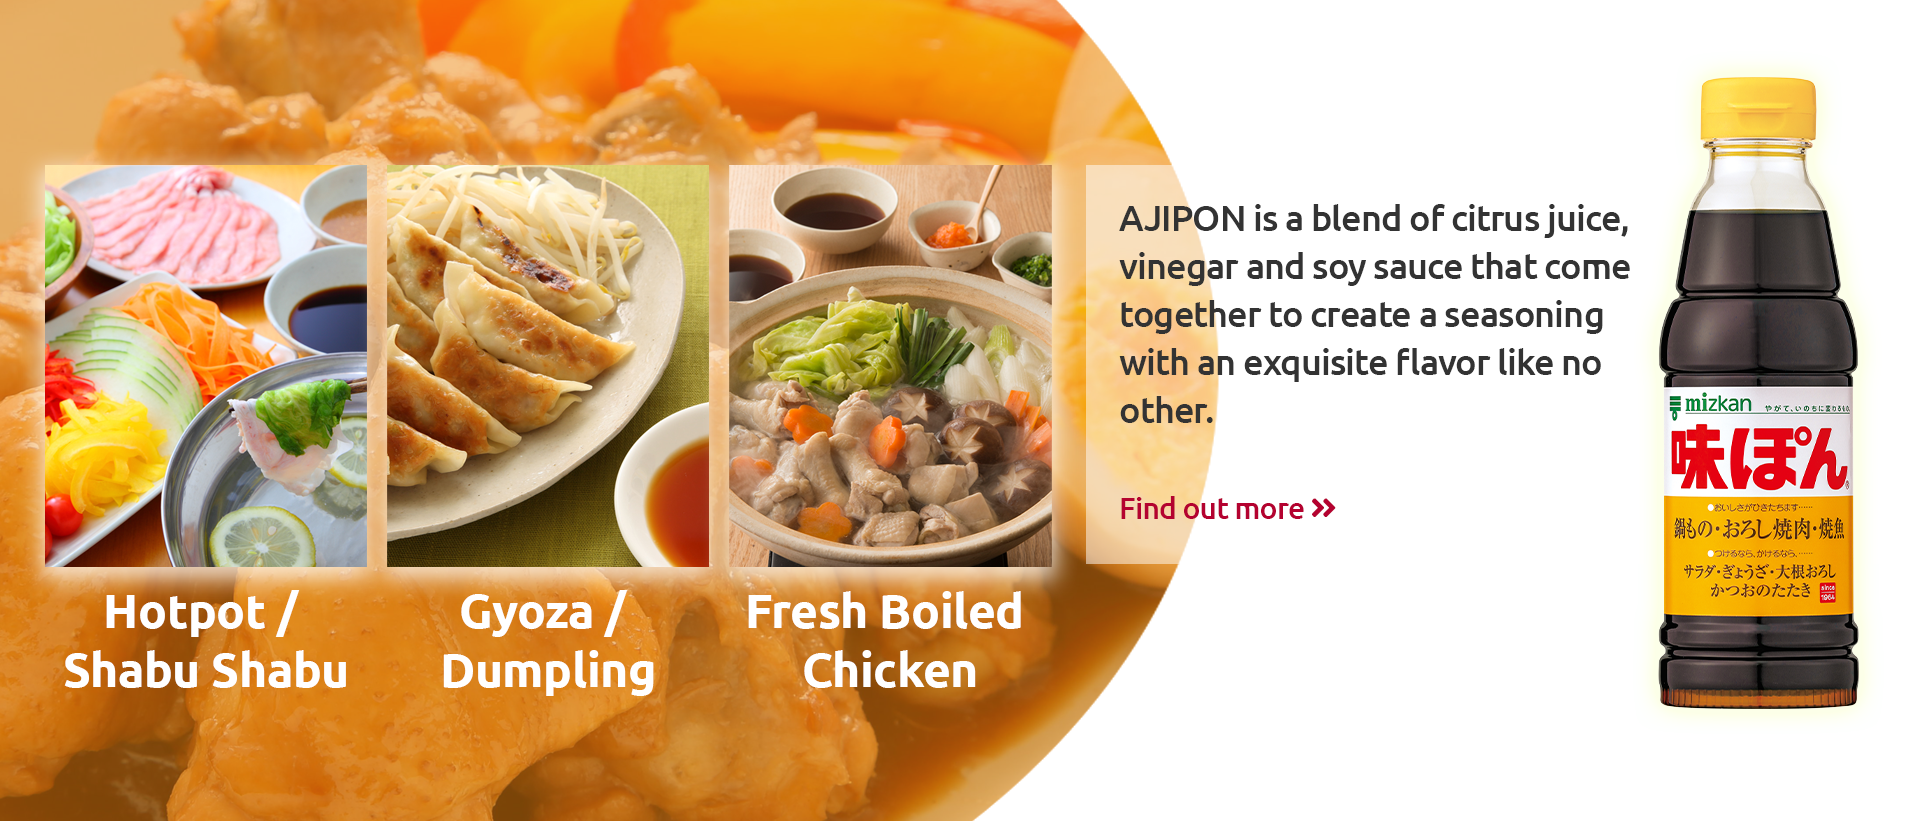 What kind of seasoning is Ajipon?